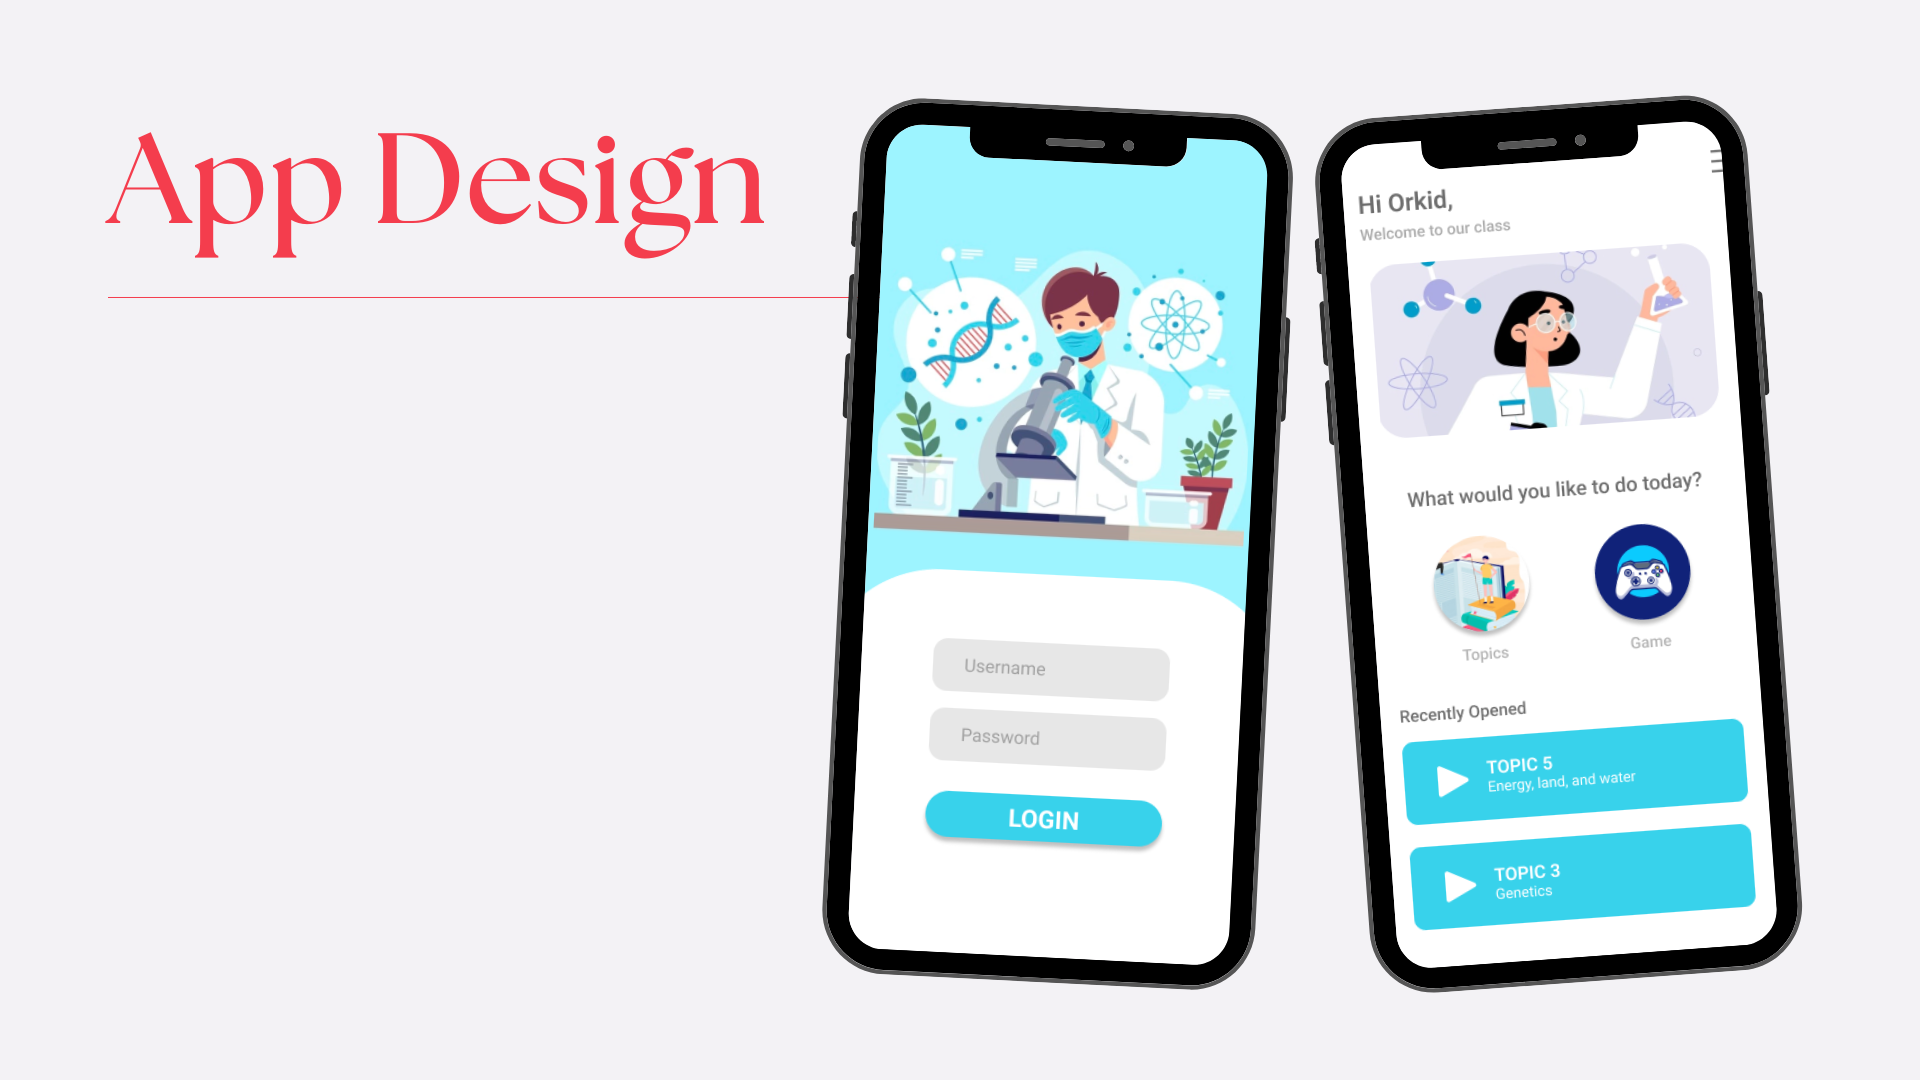 App Design #2